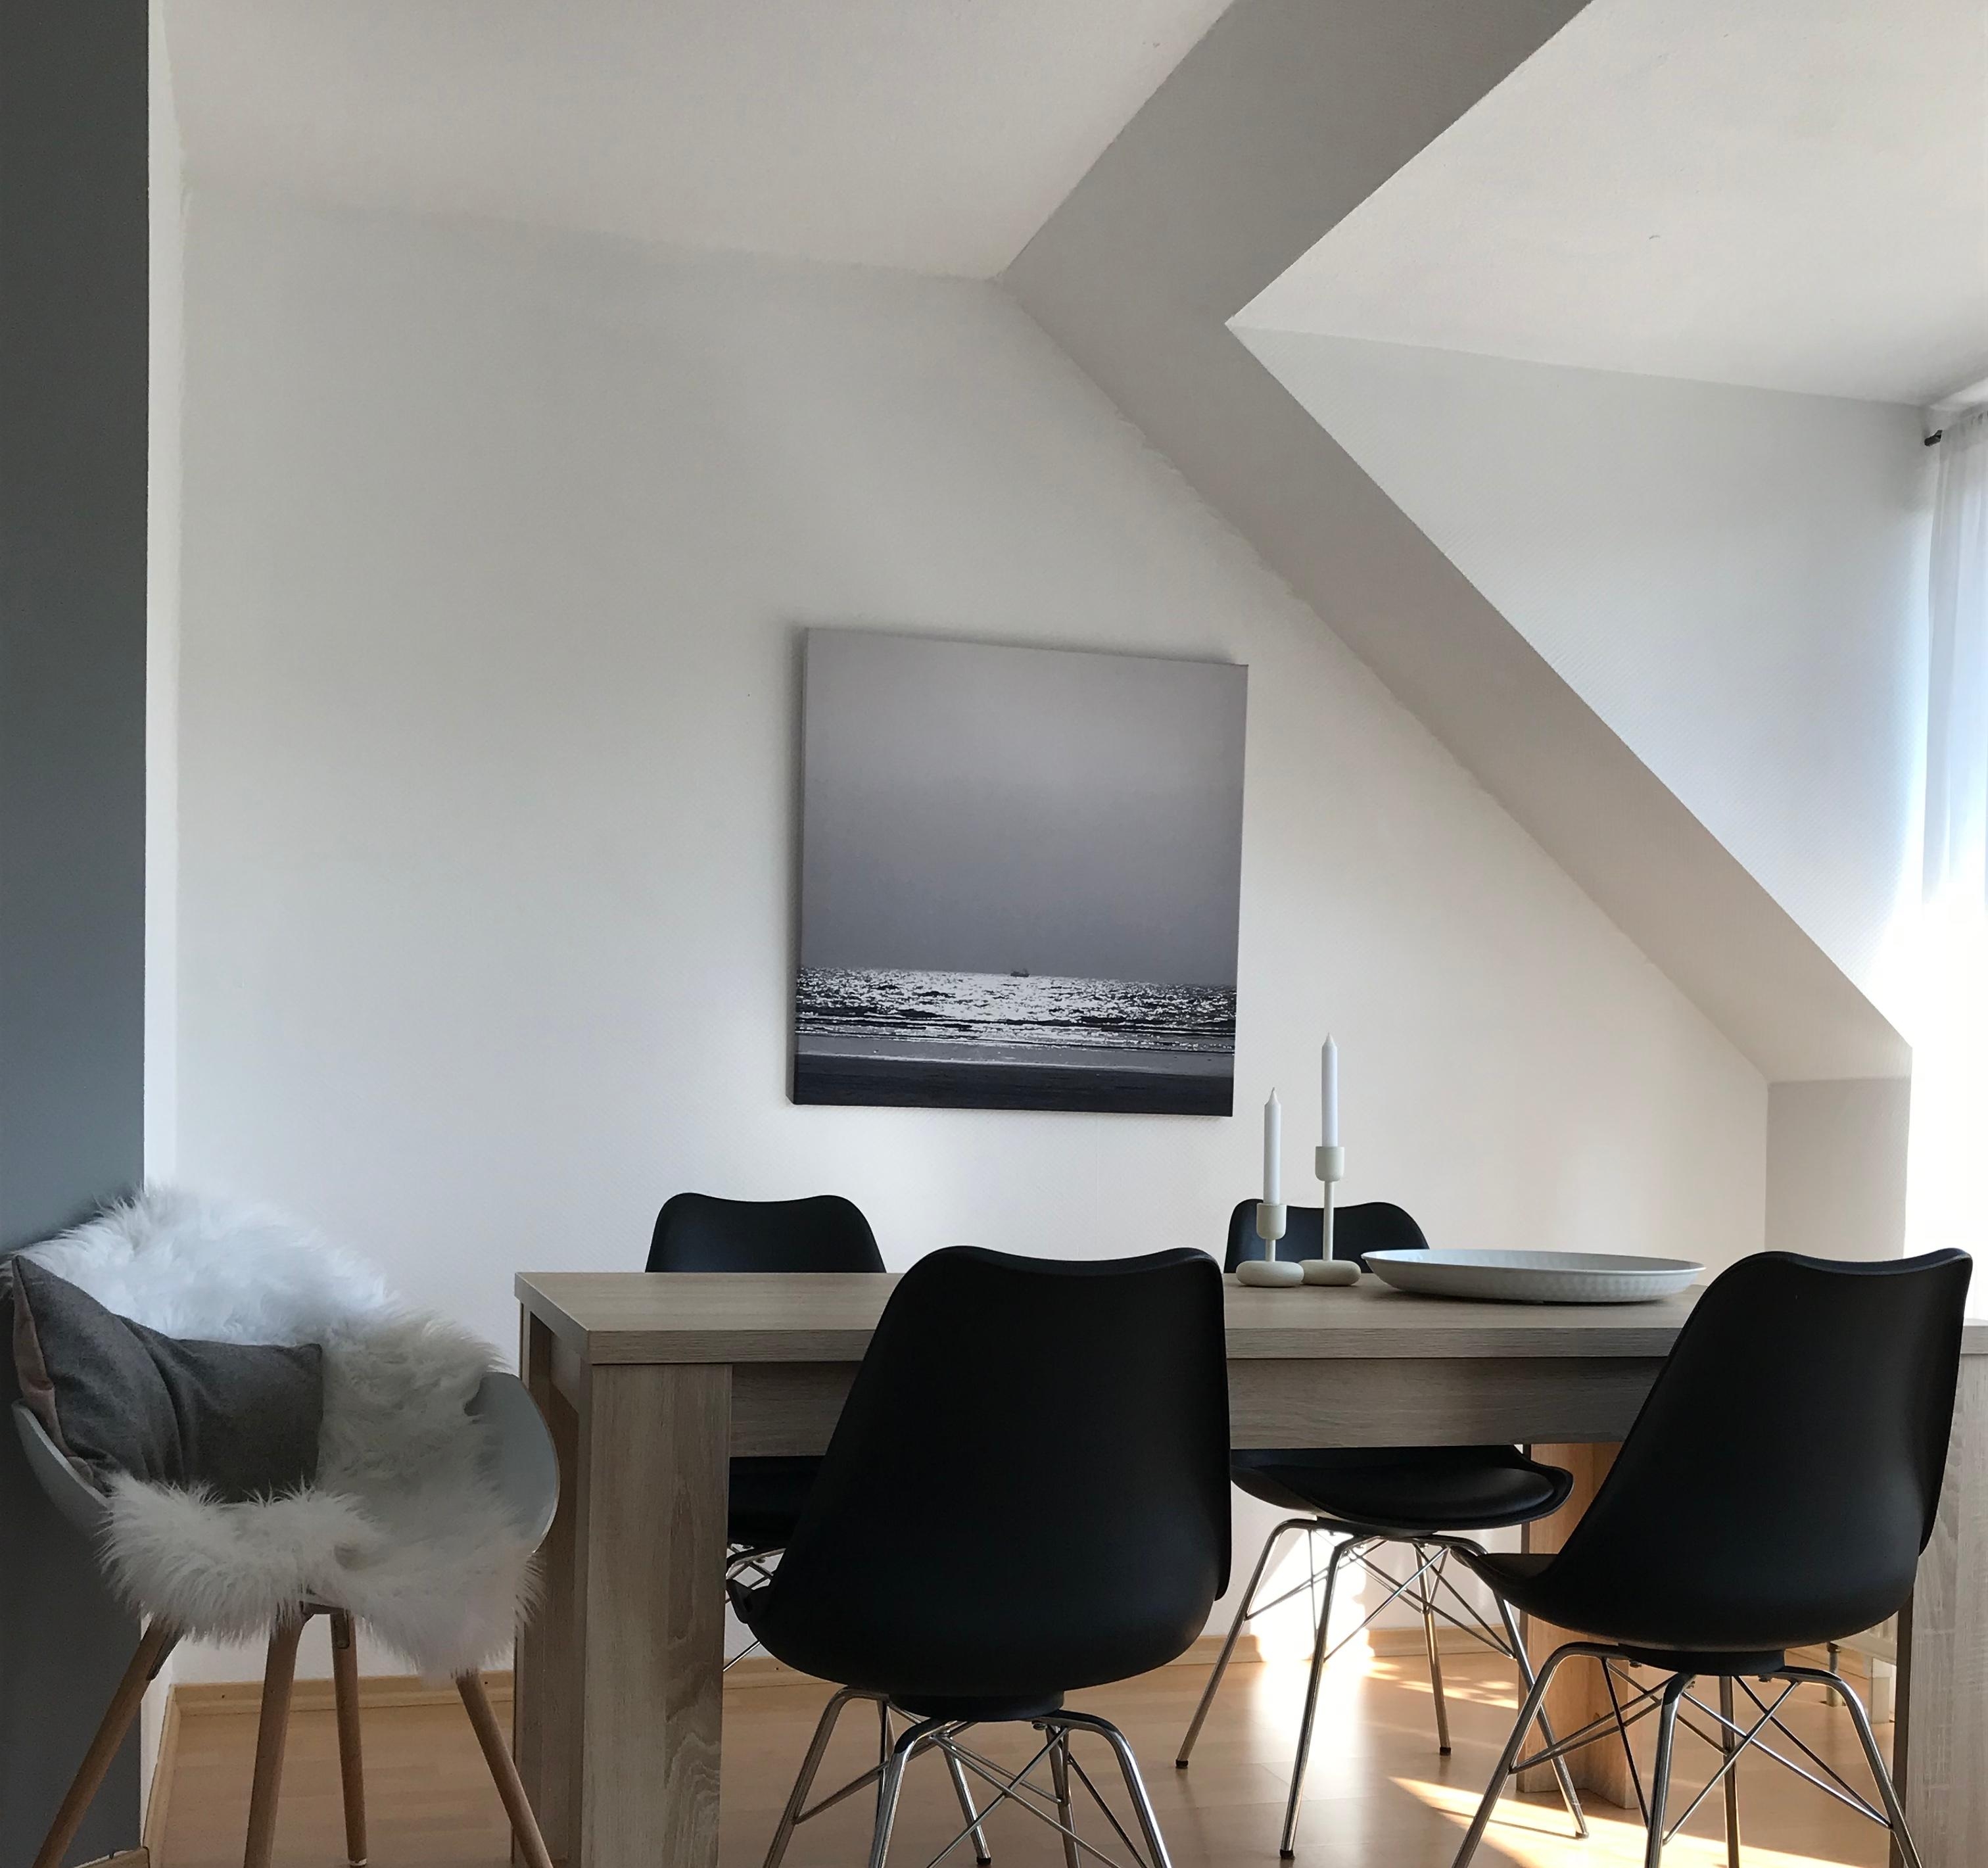 Juhu, Feierabend und Sonne ☀️ 
#skandinavian #minimalistisch #Black&White #Livingroom 